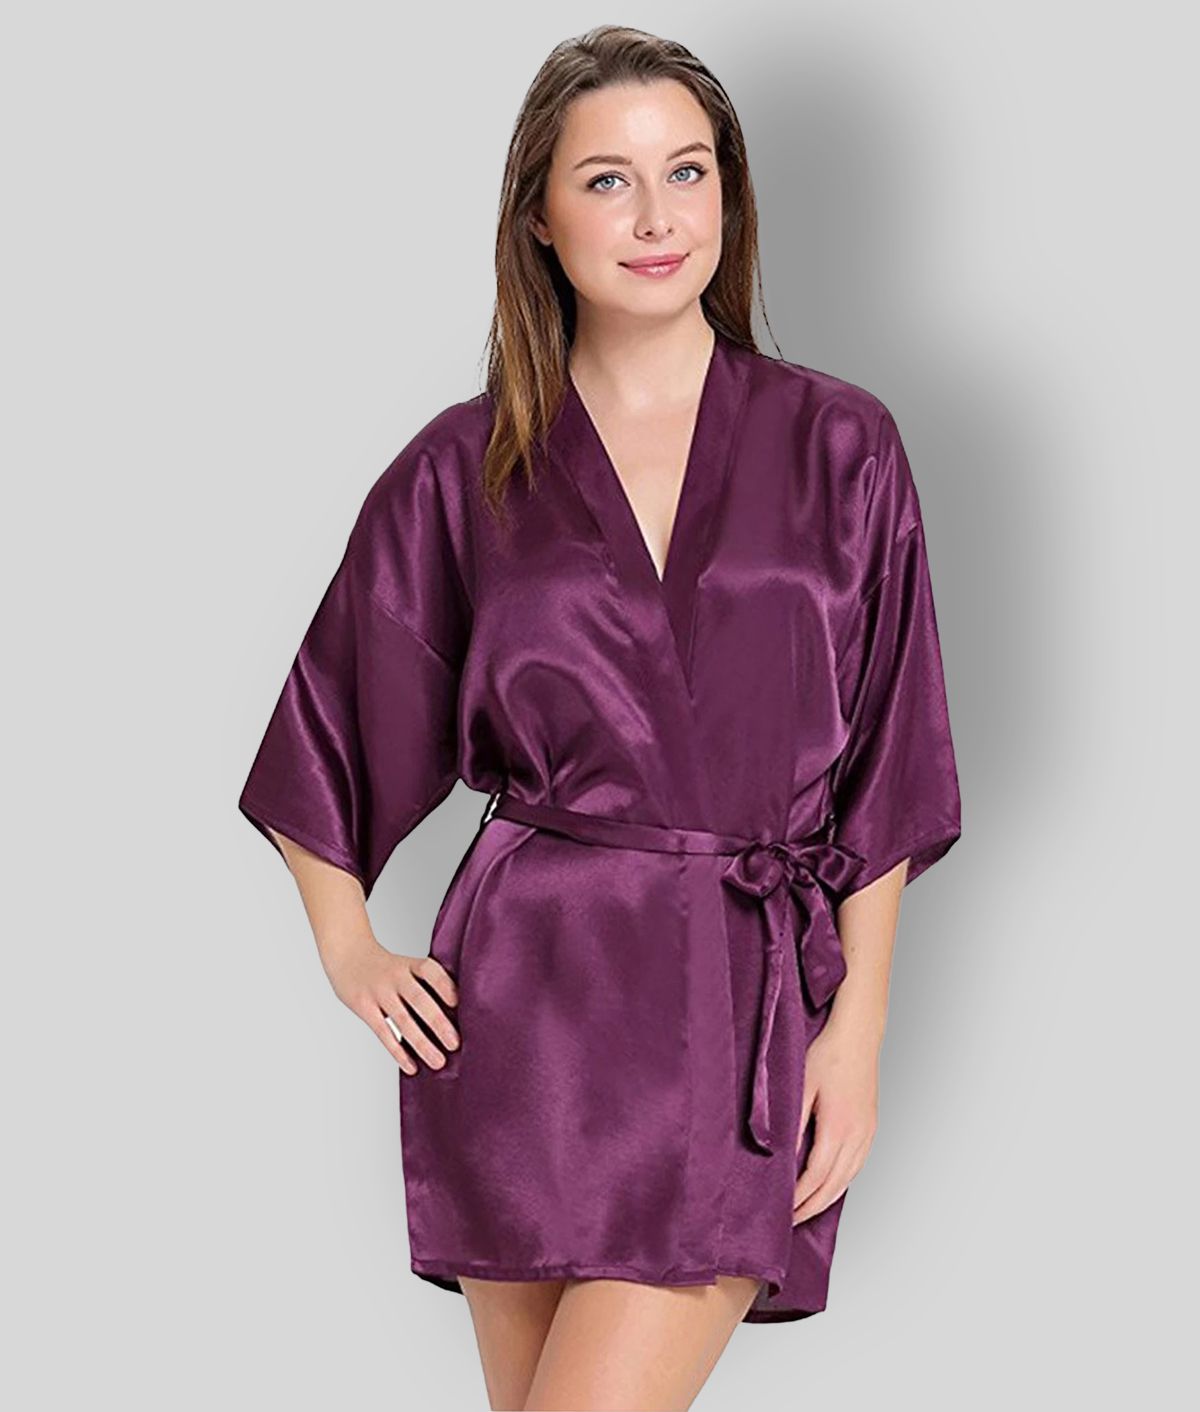     			Celosia - Purple Satin Women's Nightwear Robes